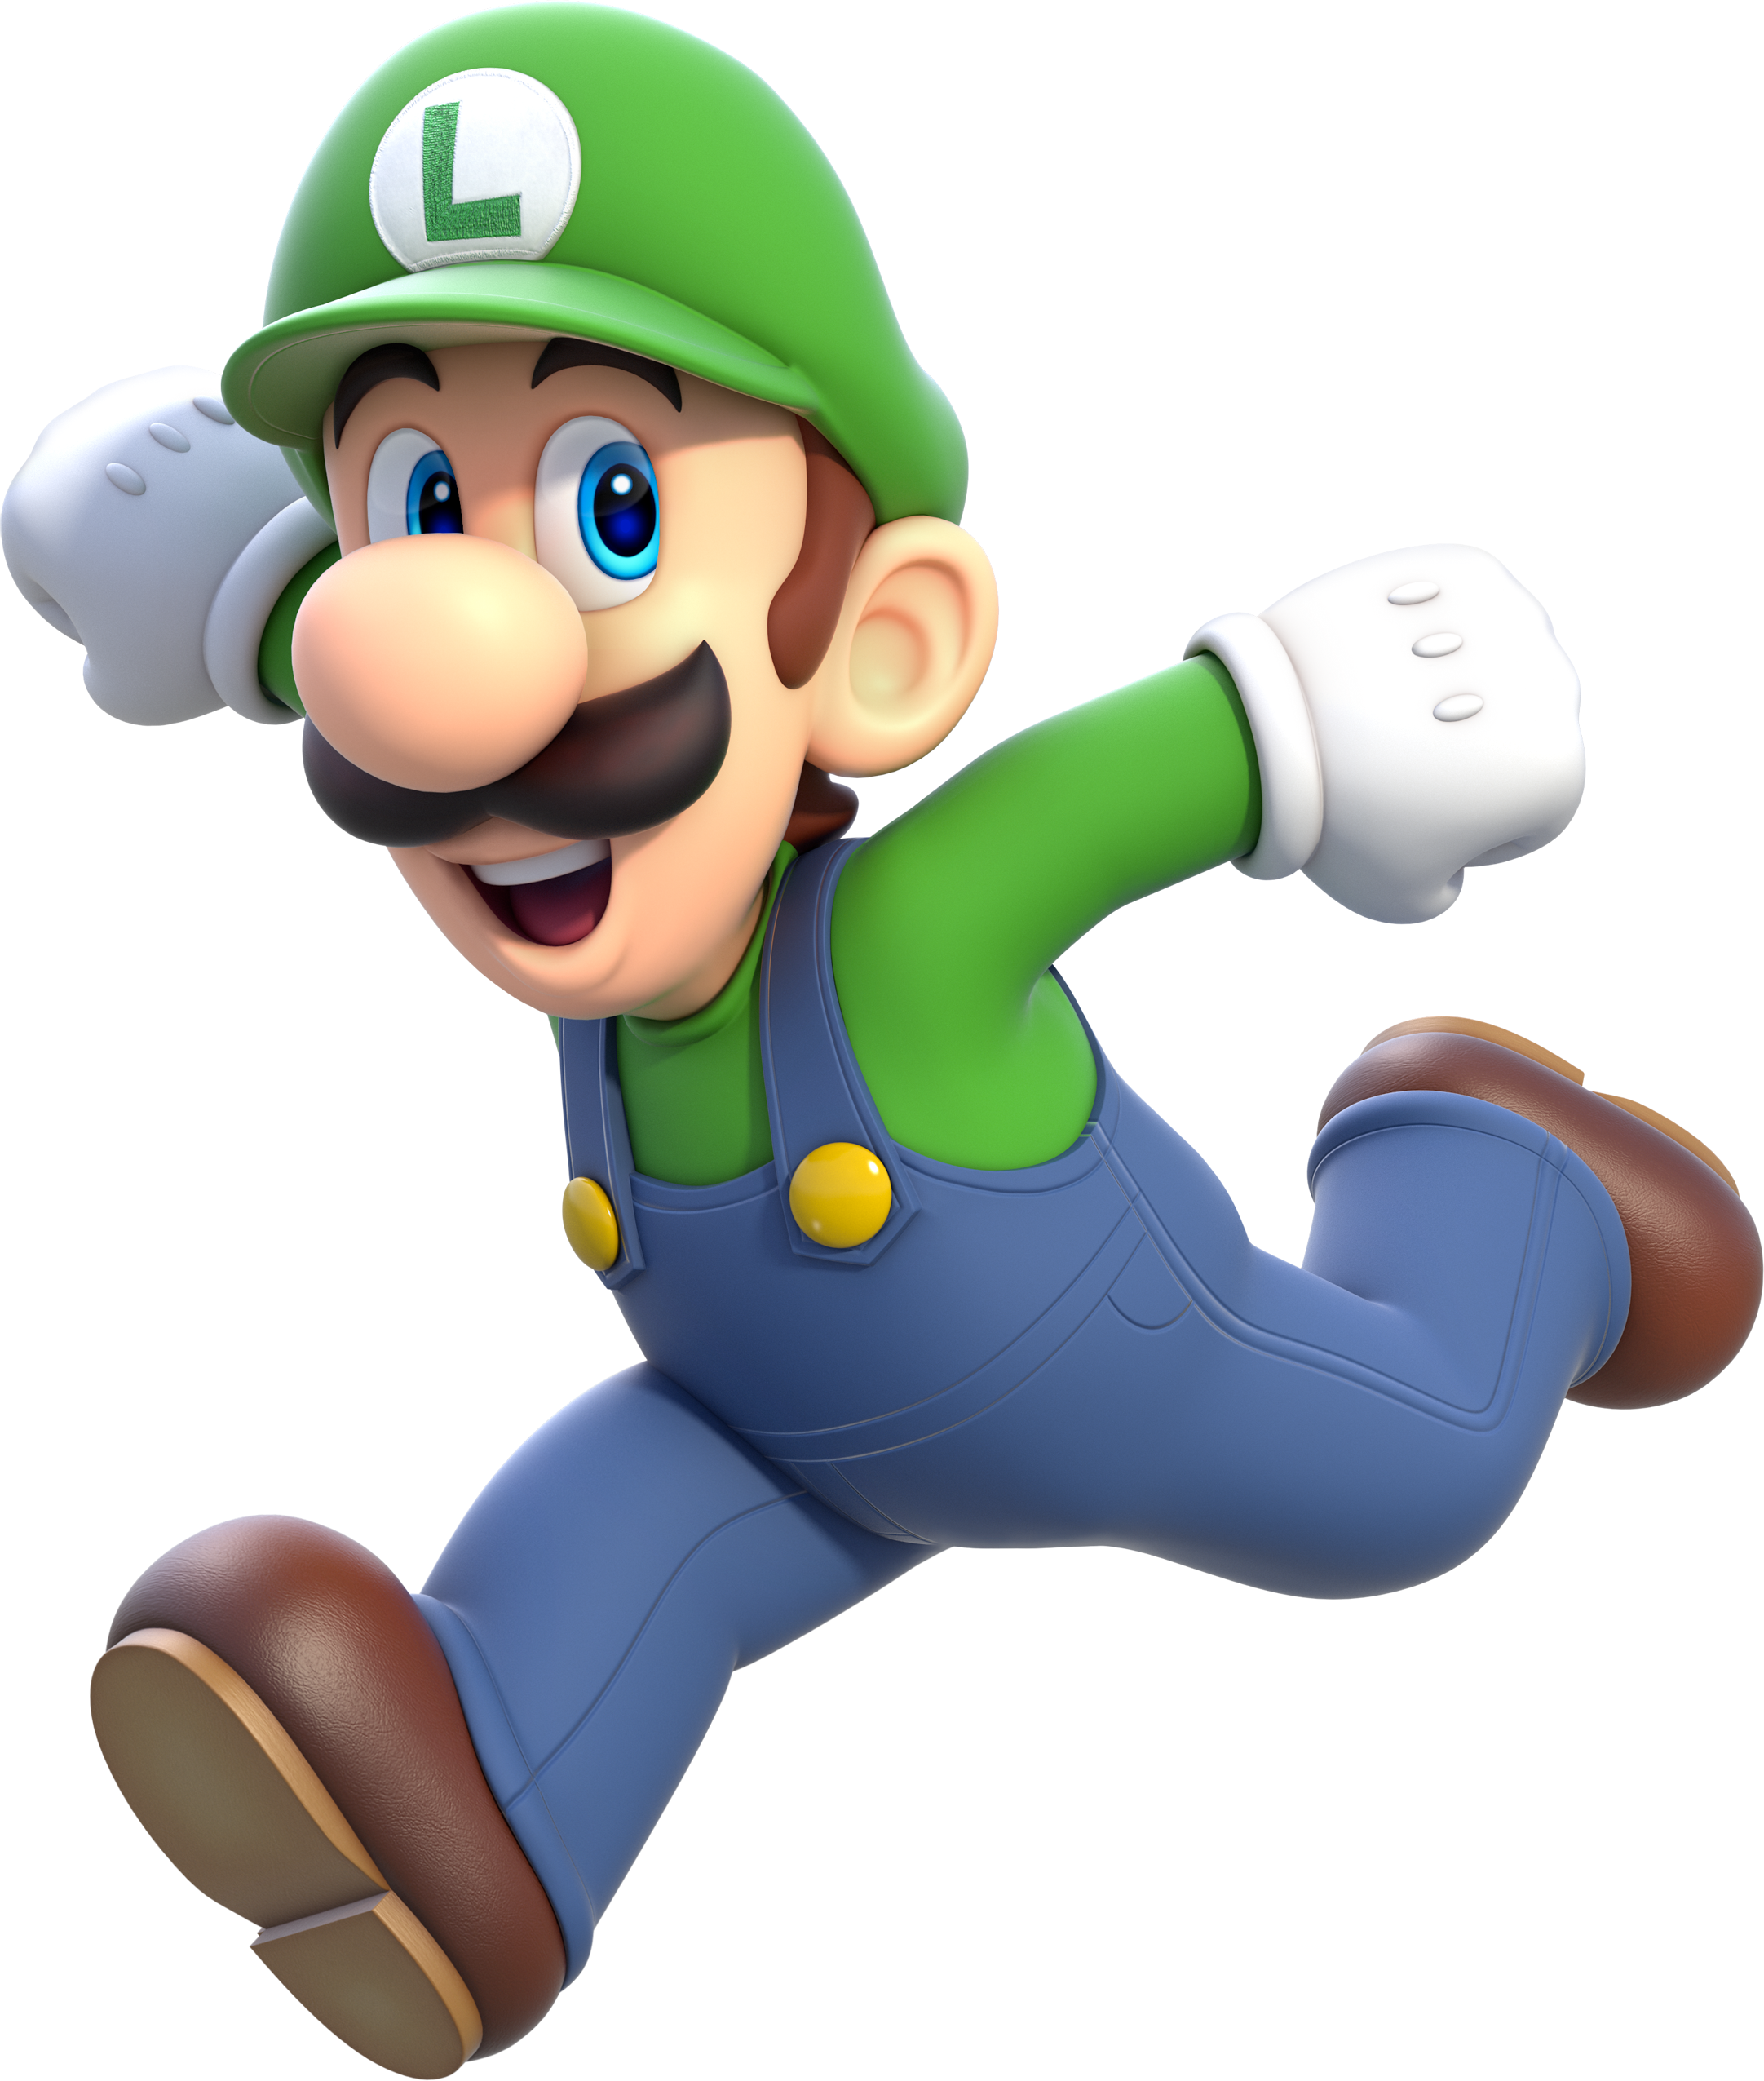 Super Mario Run - Wikipedia